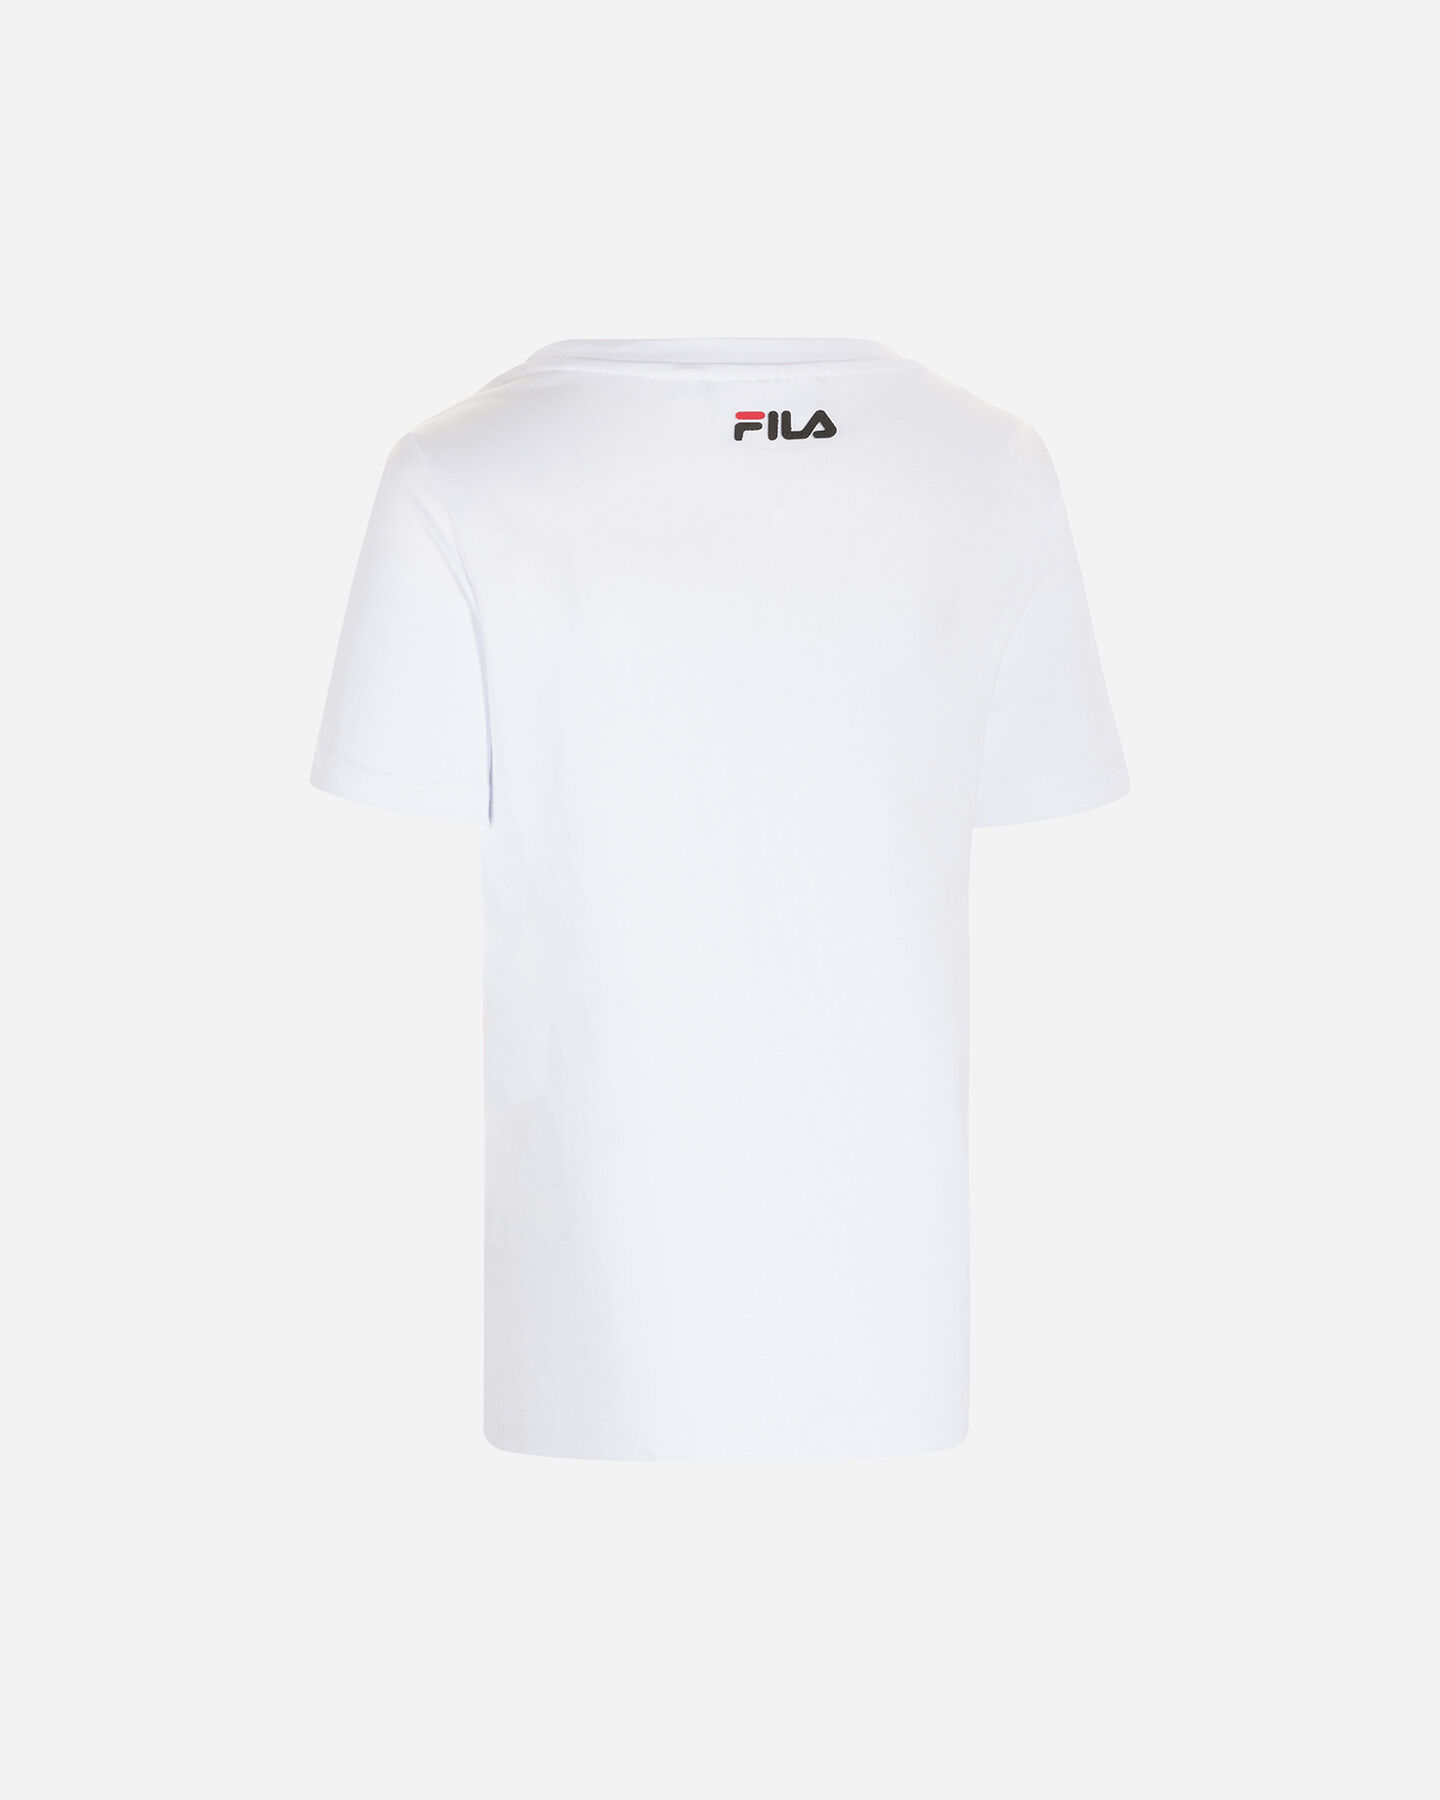  T-Shirt FILA SIMPLE BIG LOGO JR S4088599|001|4A scatto 1